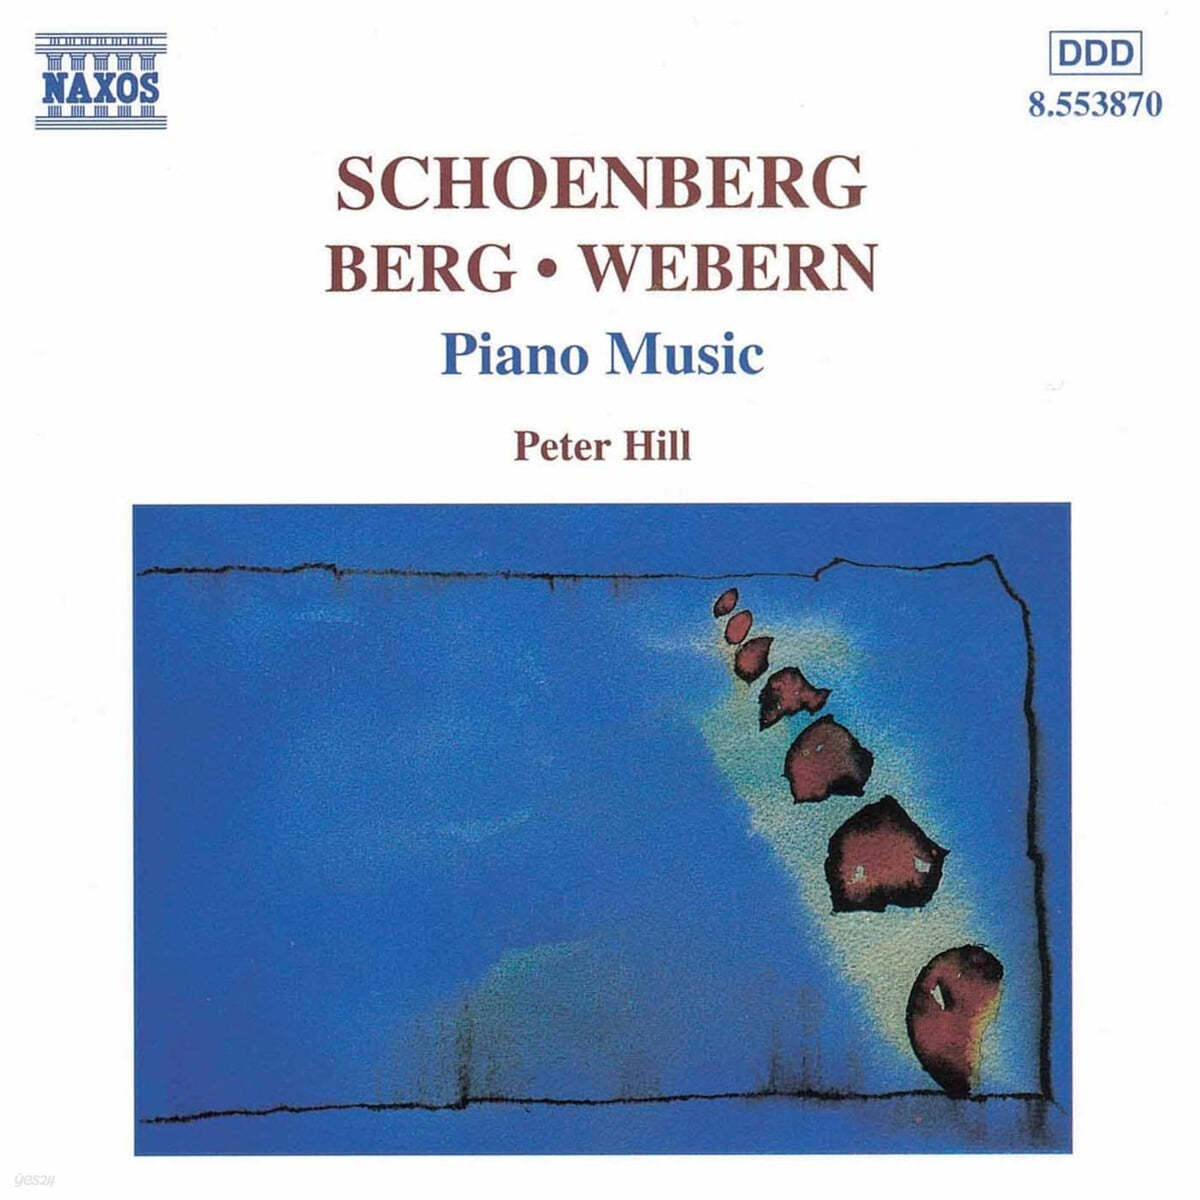 Peter Hill 베르그 / 쇤베르크 / 베버른: 피아노 작품 모음 (Berg / Schoenberg / Webern: Piano Works) 